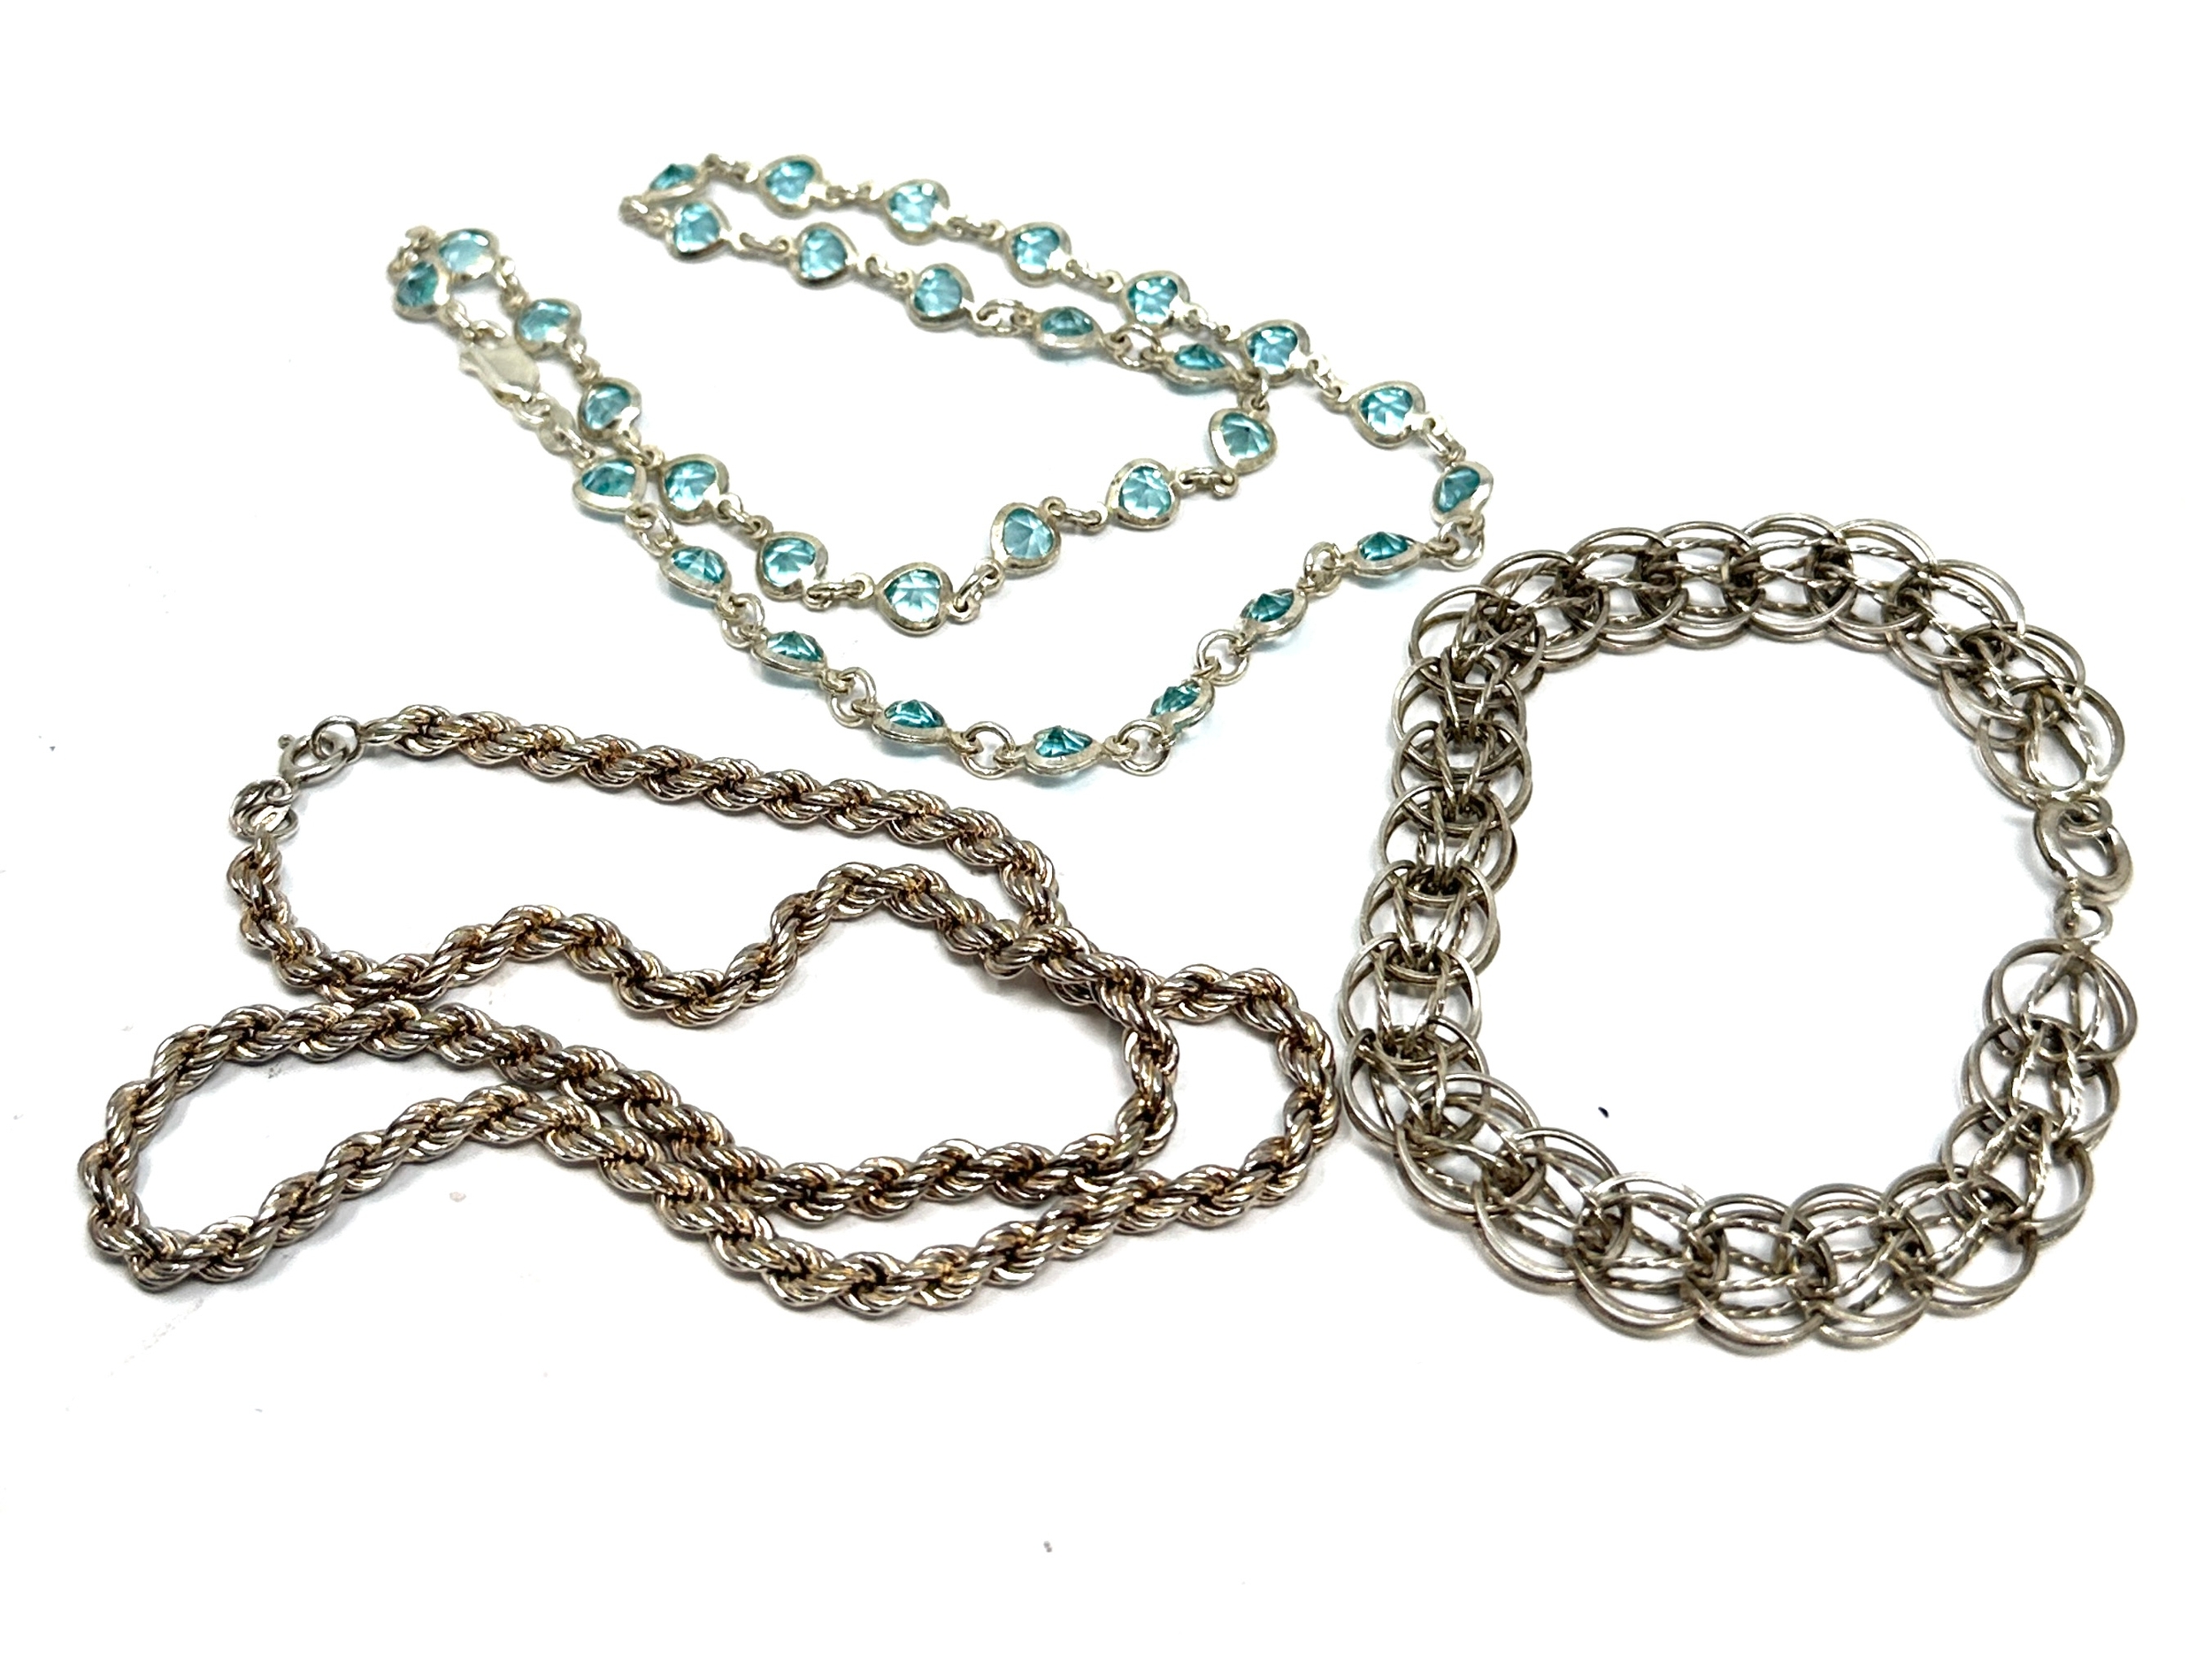 silver necrope twist chain stone set necklace & bracelet weight 30g